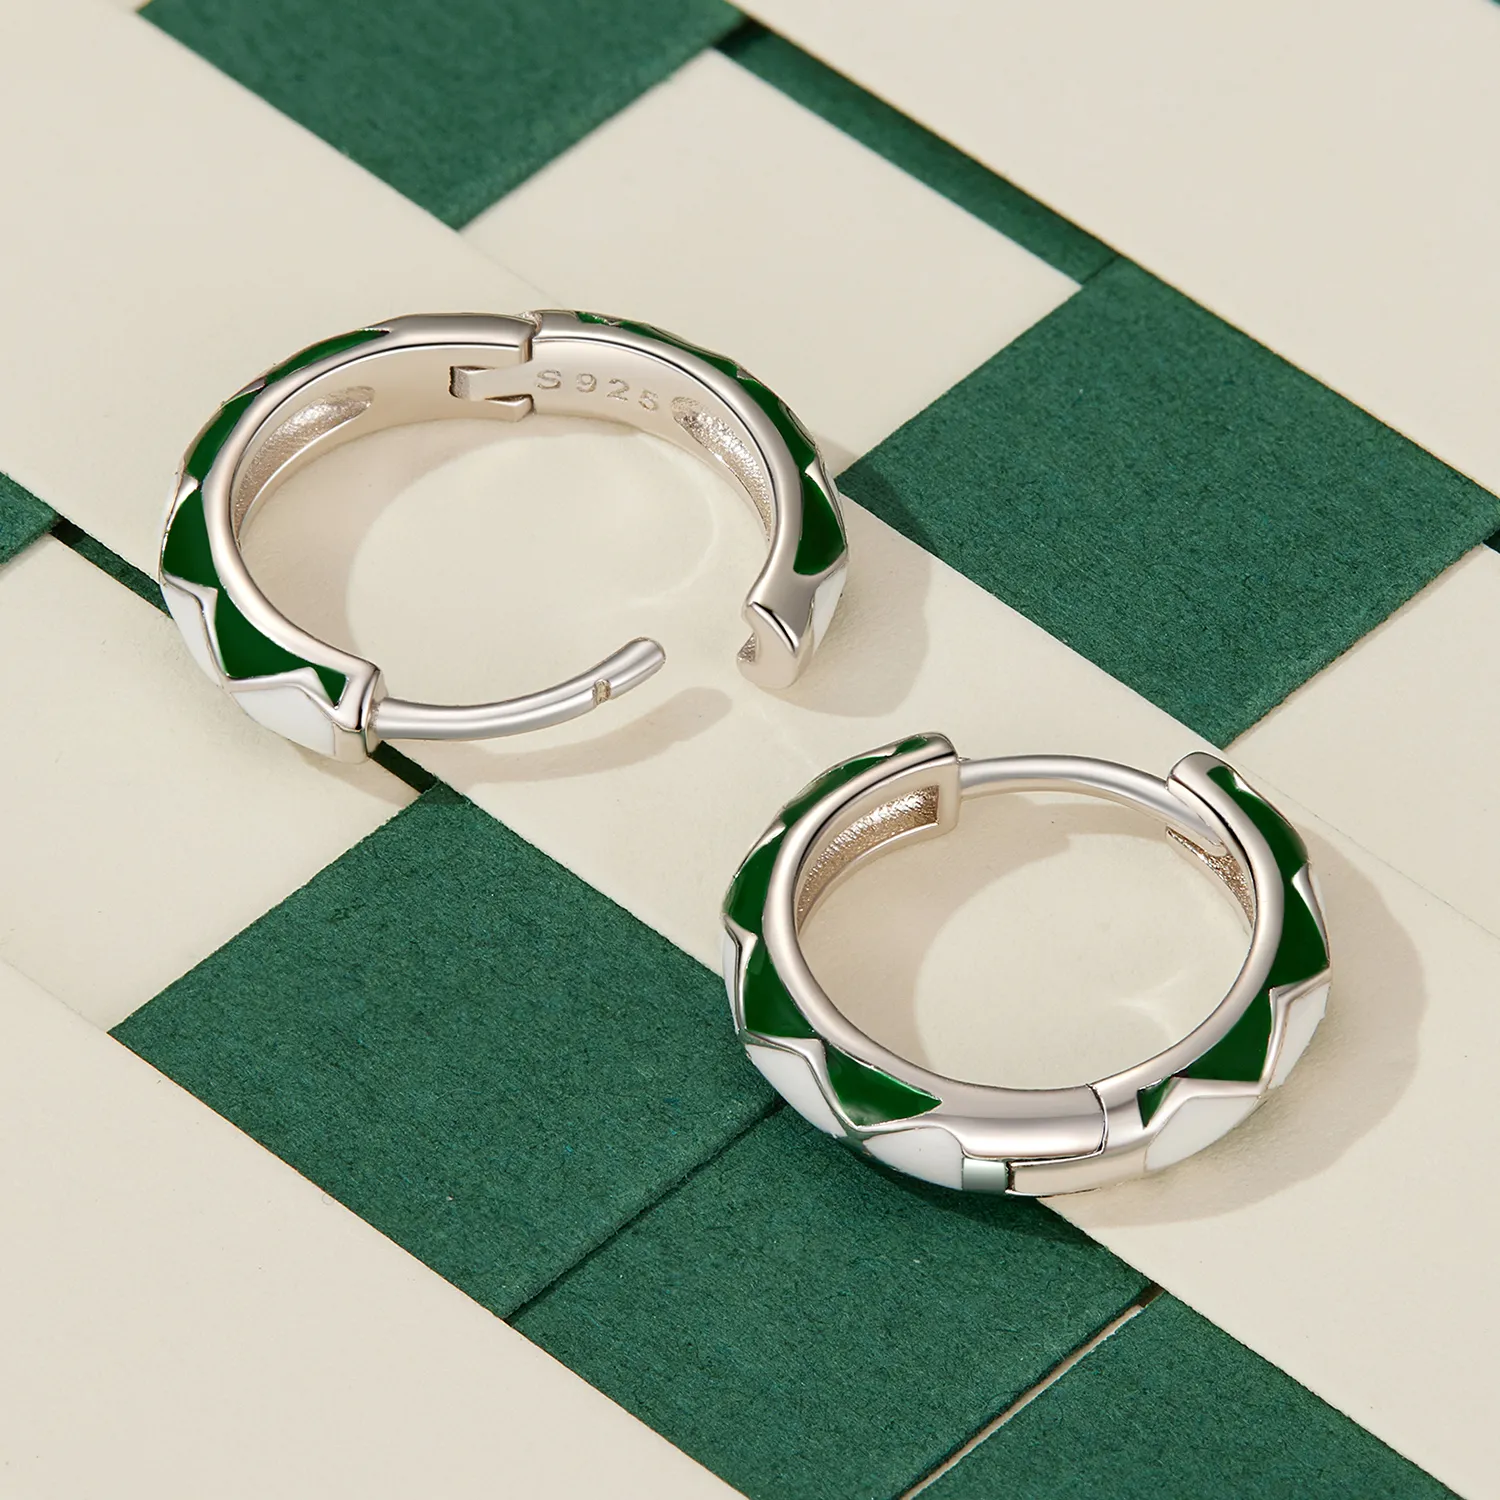 Cercei cu model de diamante verzi și albe în stilul Pandora - SCE1611-GN